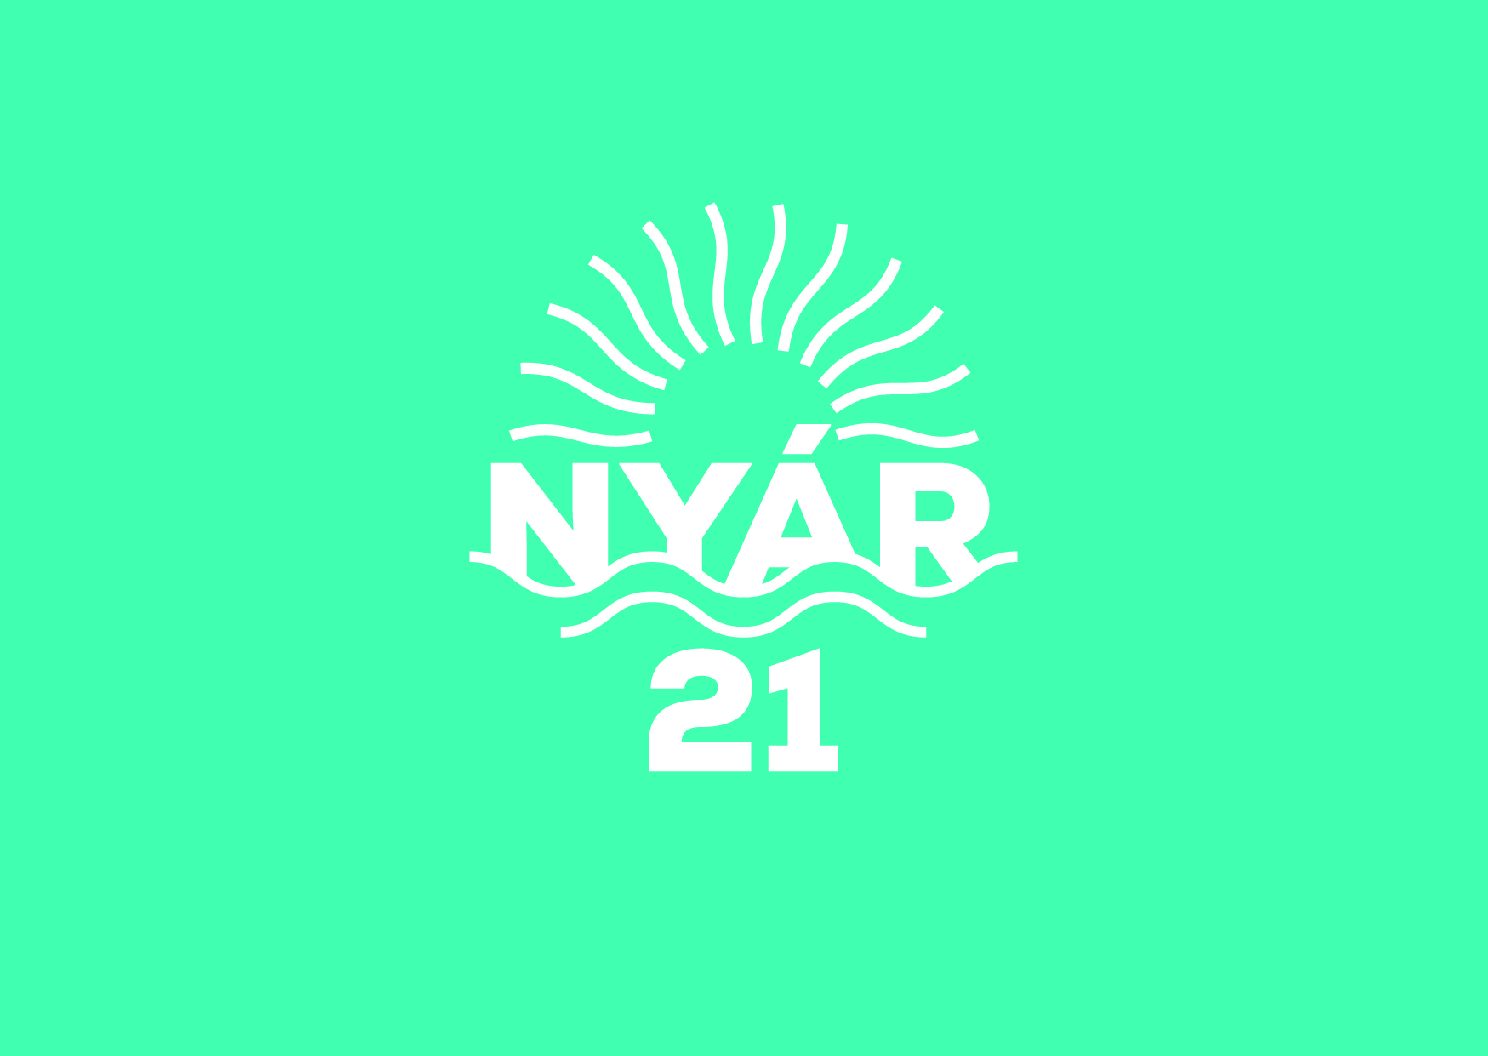 nyar-21-logo.jpg